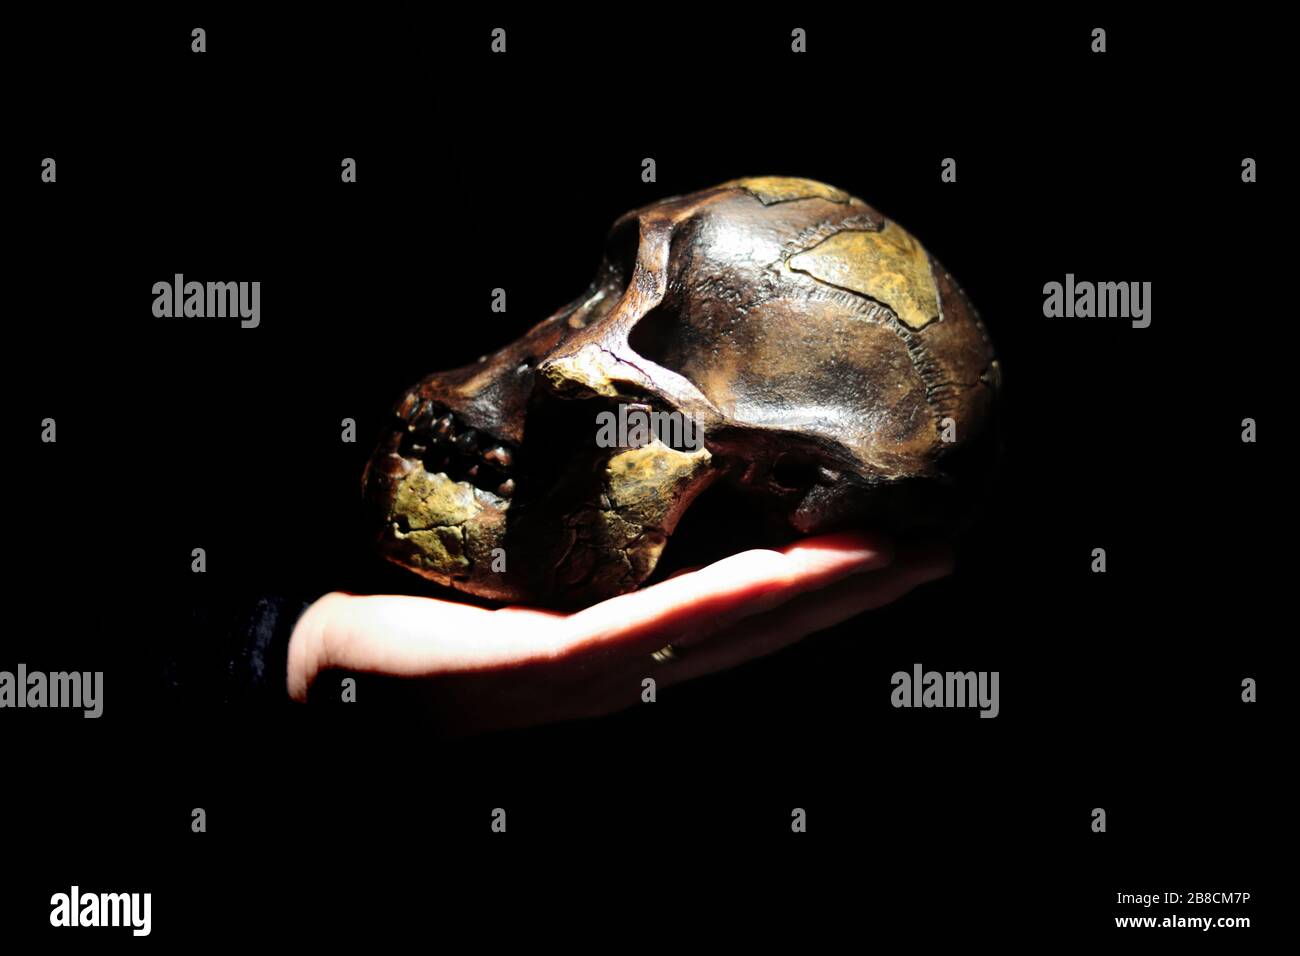 Modell des menschlichen Ahnenschädels (Australopithecus afarensis) an der Hand. Dunkler Hintergrund. Stockfoto